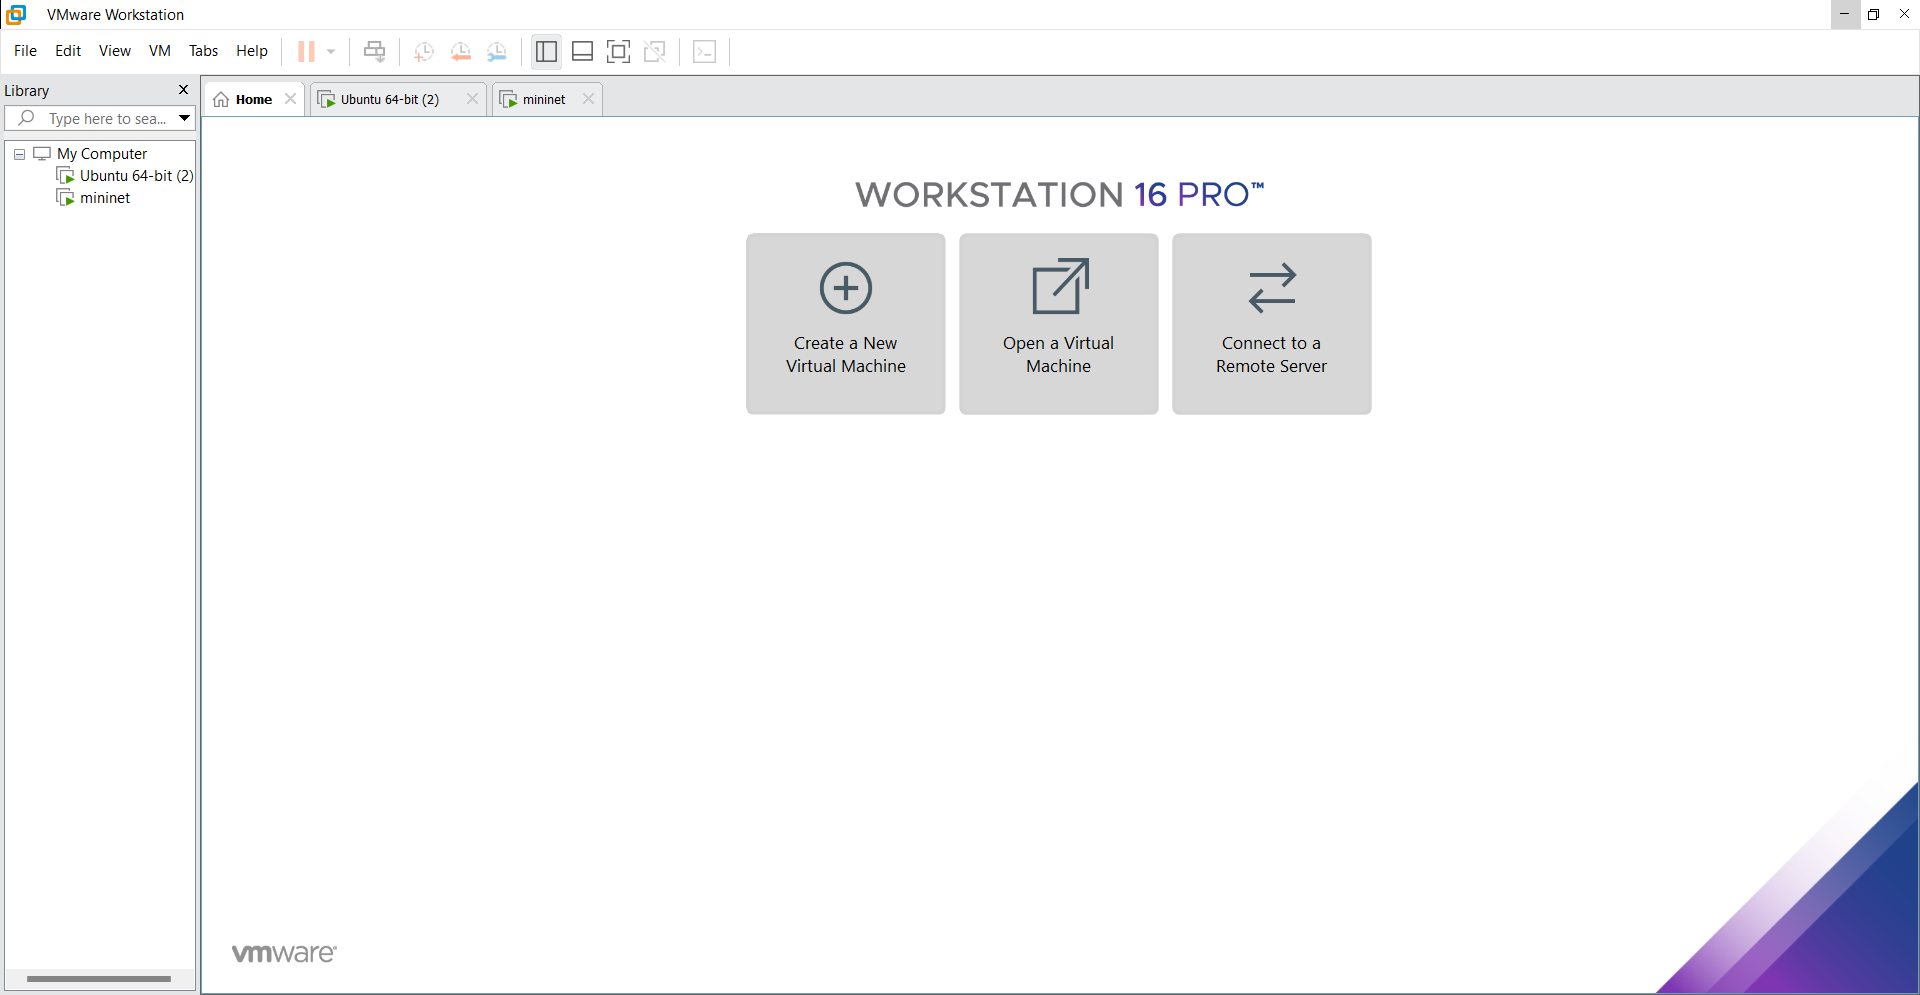  VMware Workstation 16 Pro!